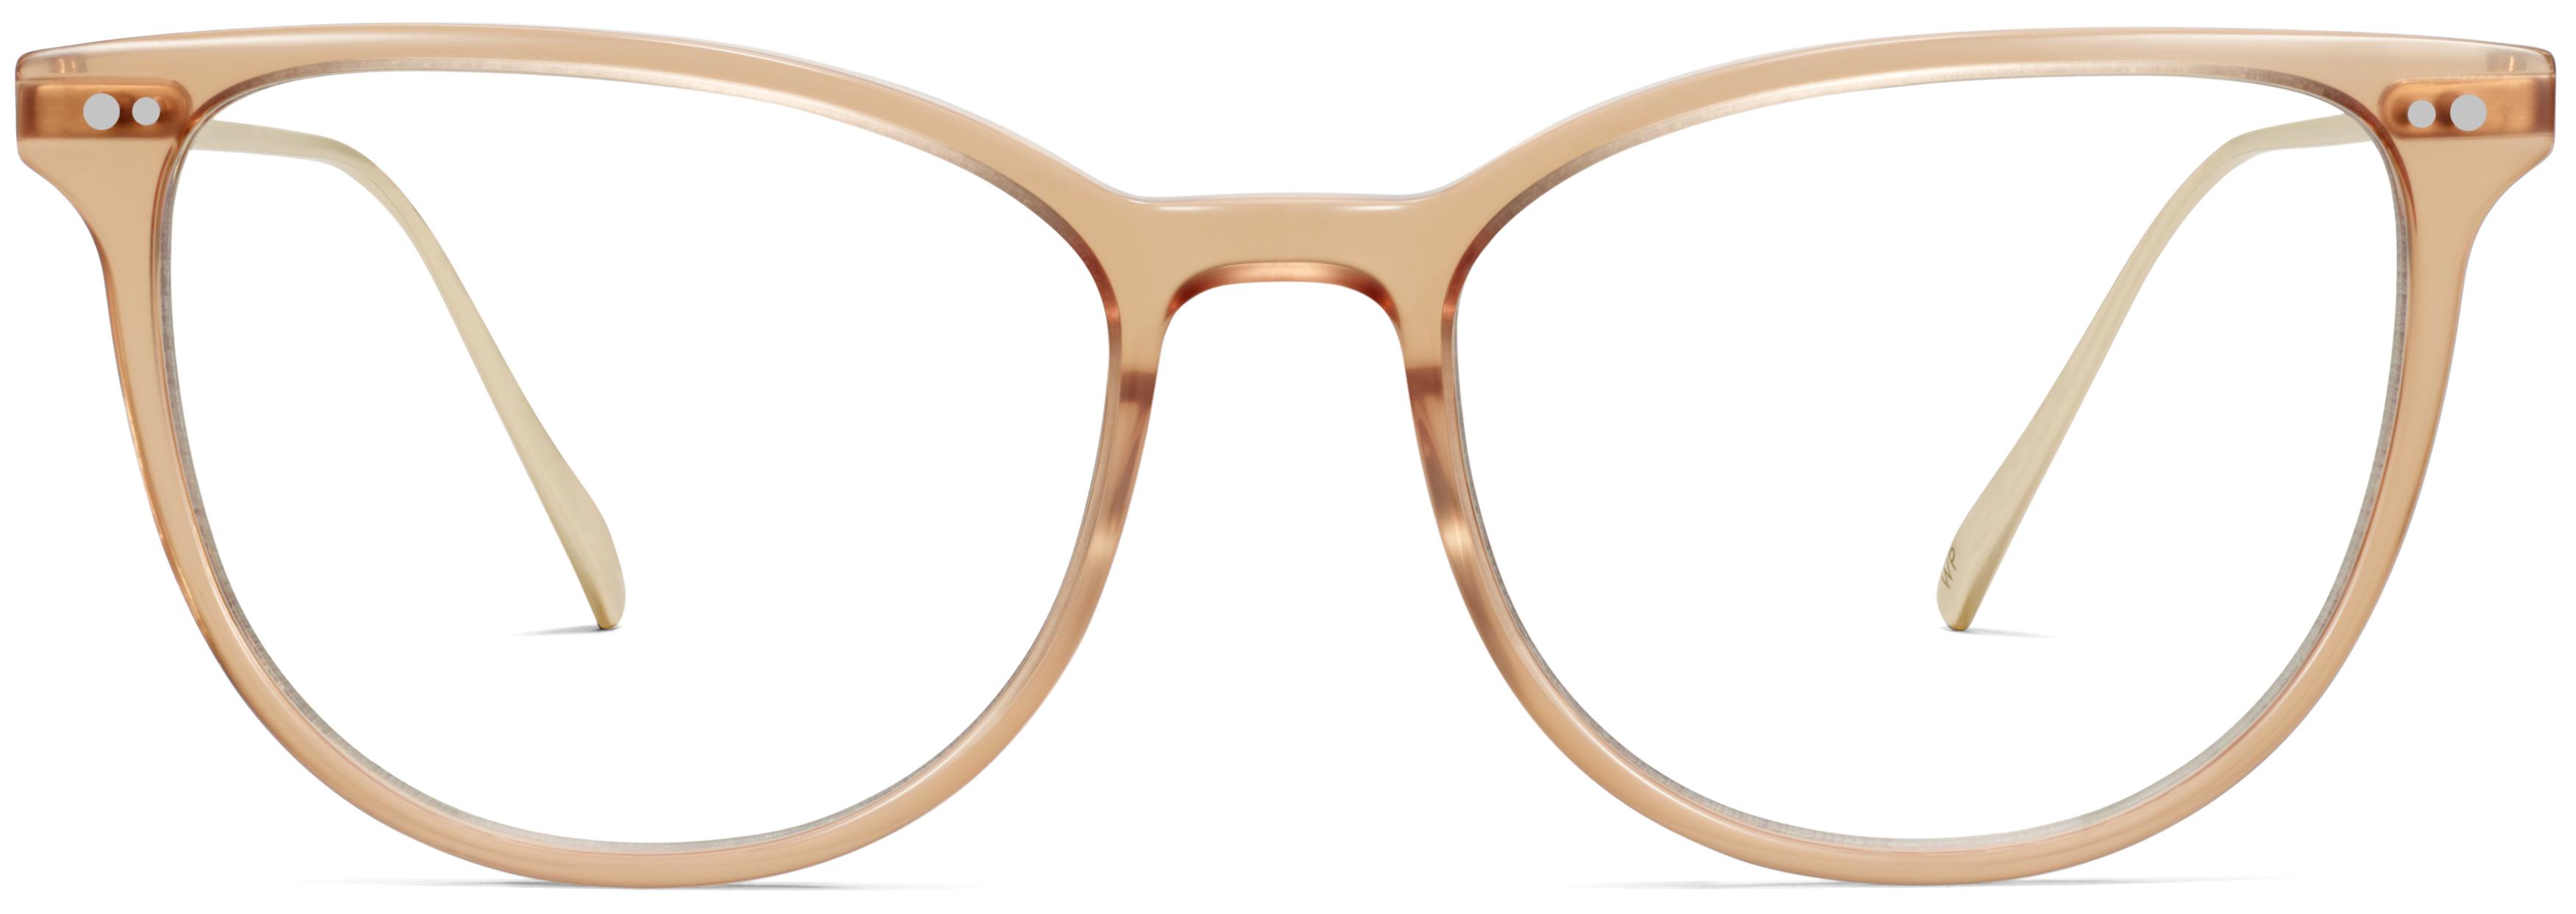 Odnos šunka sprej  Toula Eyeglasses in Praline with Riesling | Warby Parker